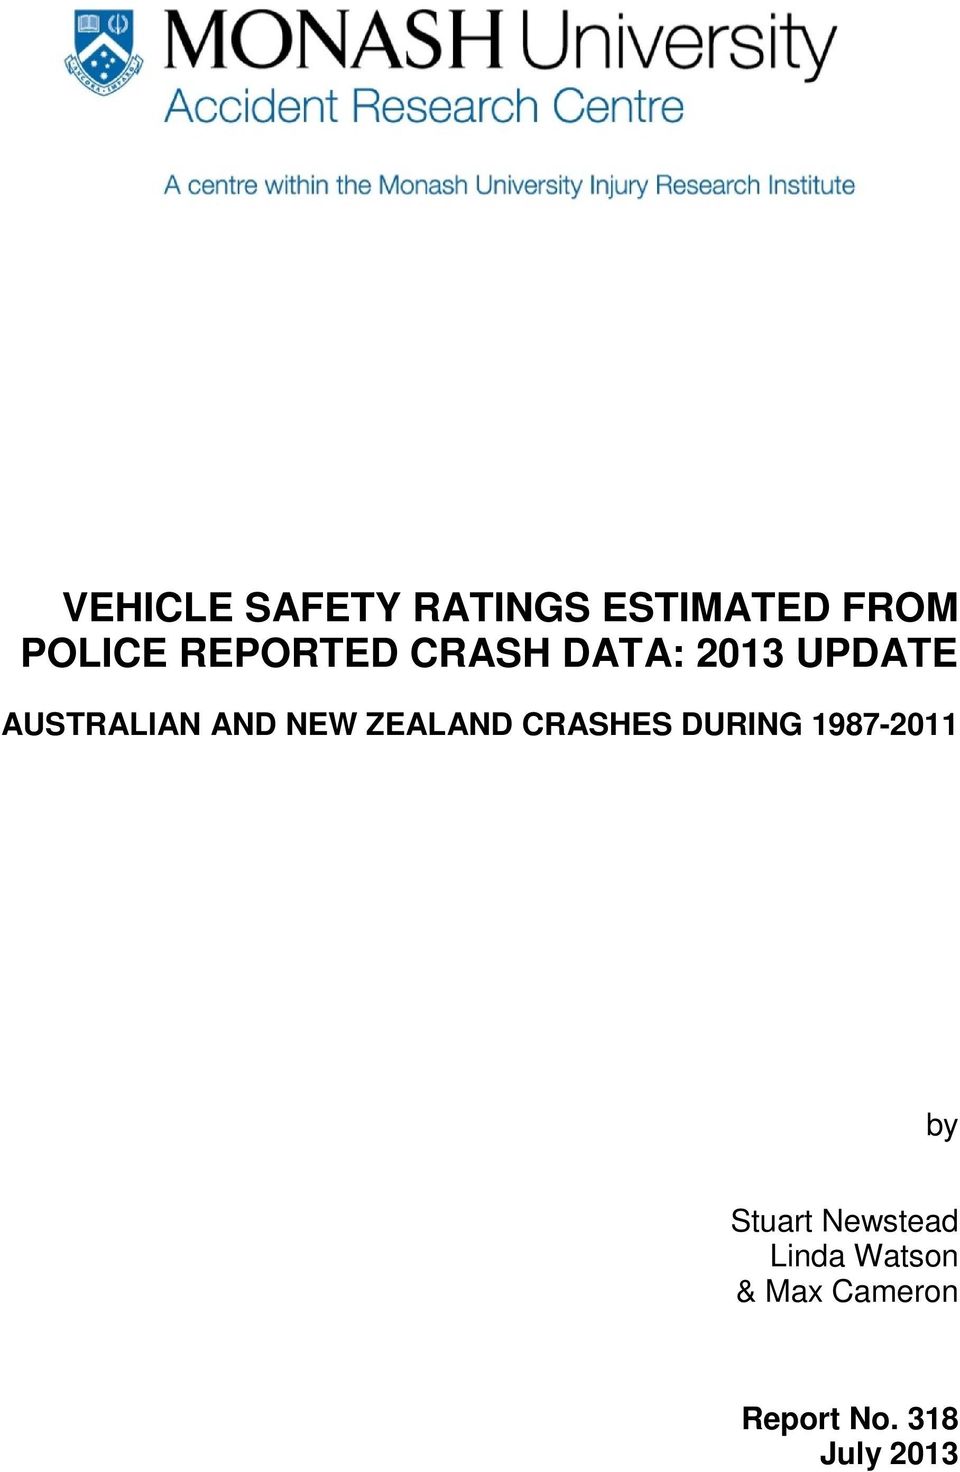 NEW ZEALAND CRASHES DURING 1987-2011 by Stuart